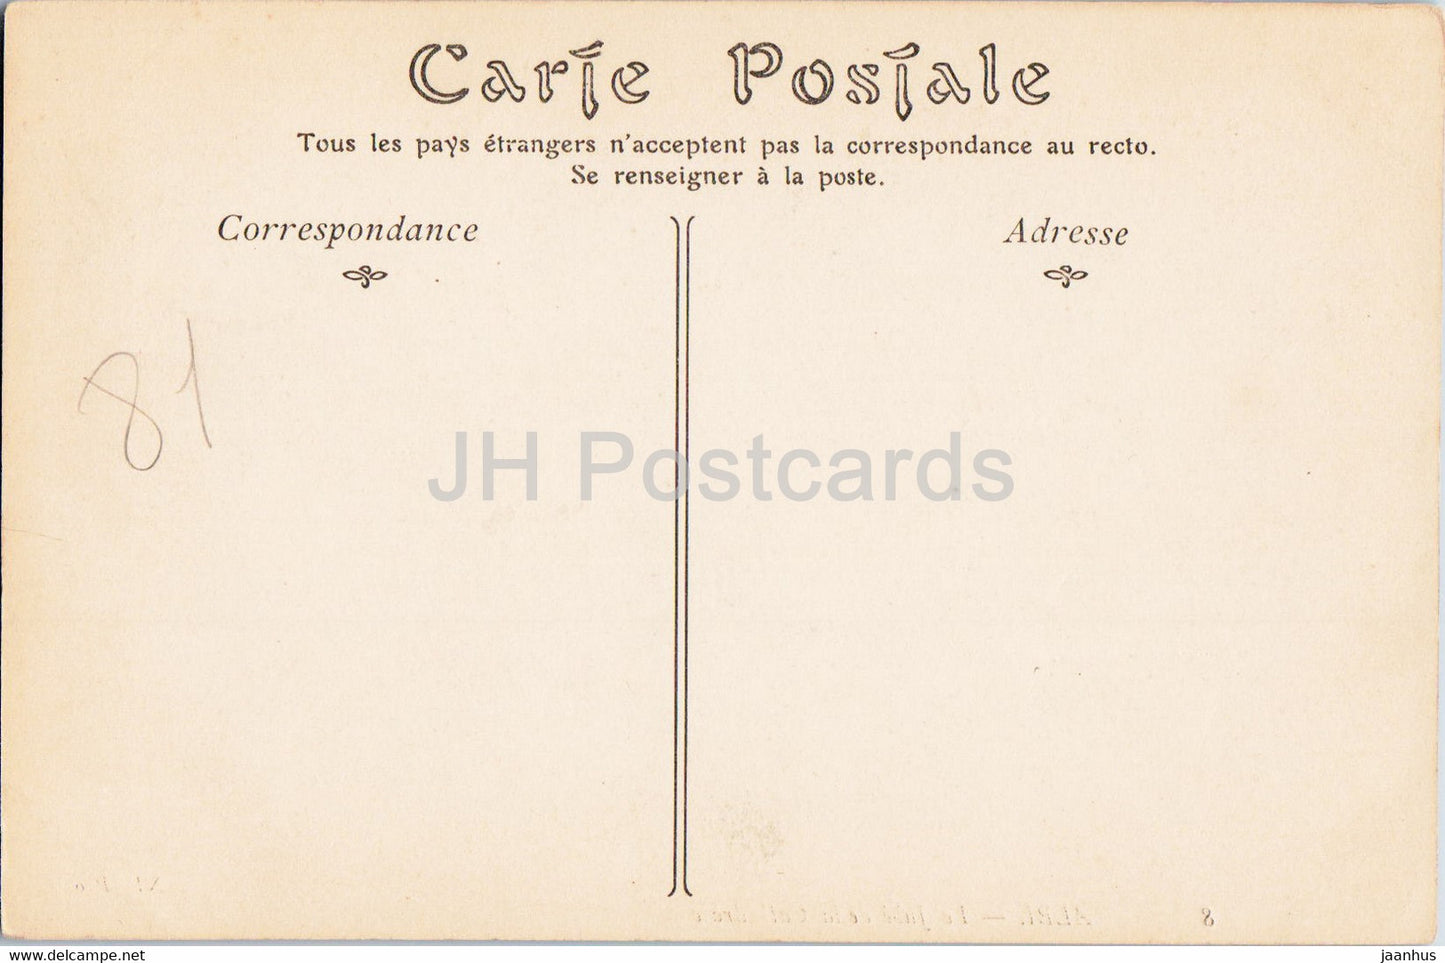 Albi - Le Jube de La Cathedrale - 8 - Kathedrale - alte Postkarte - Frankreich - unbenutzt